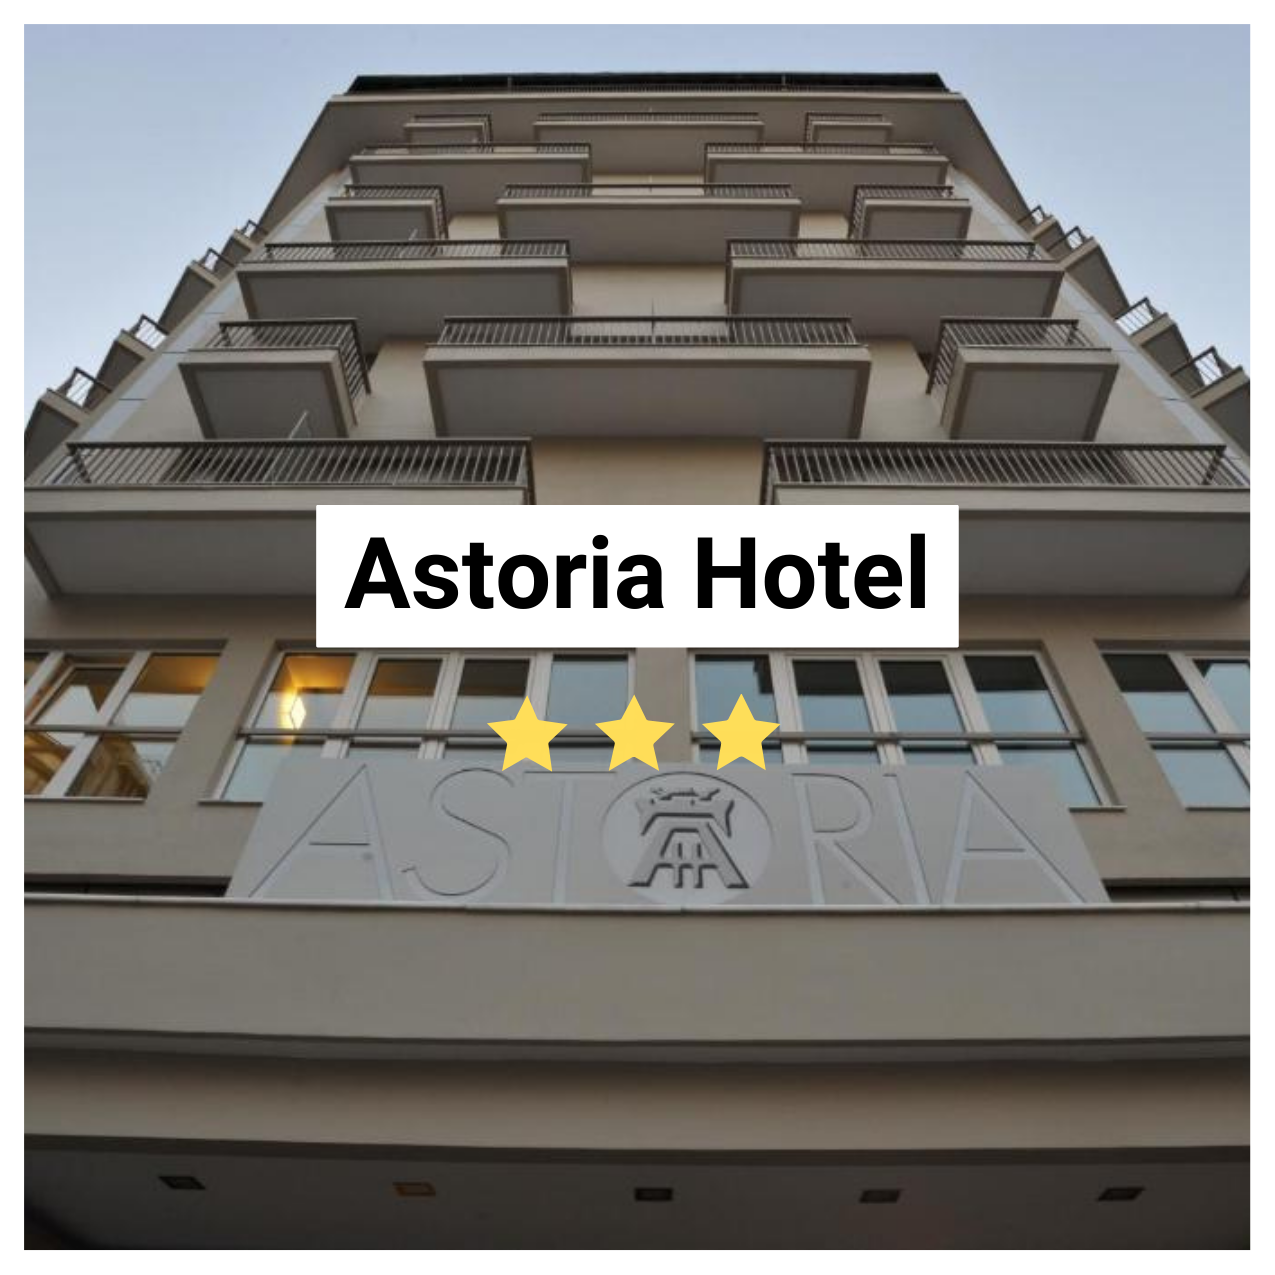 Astoria Hotel Image. 